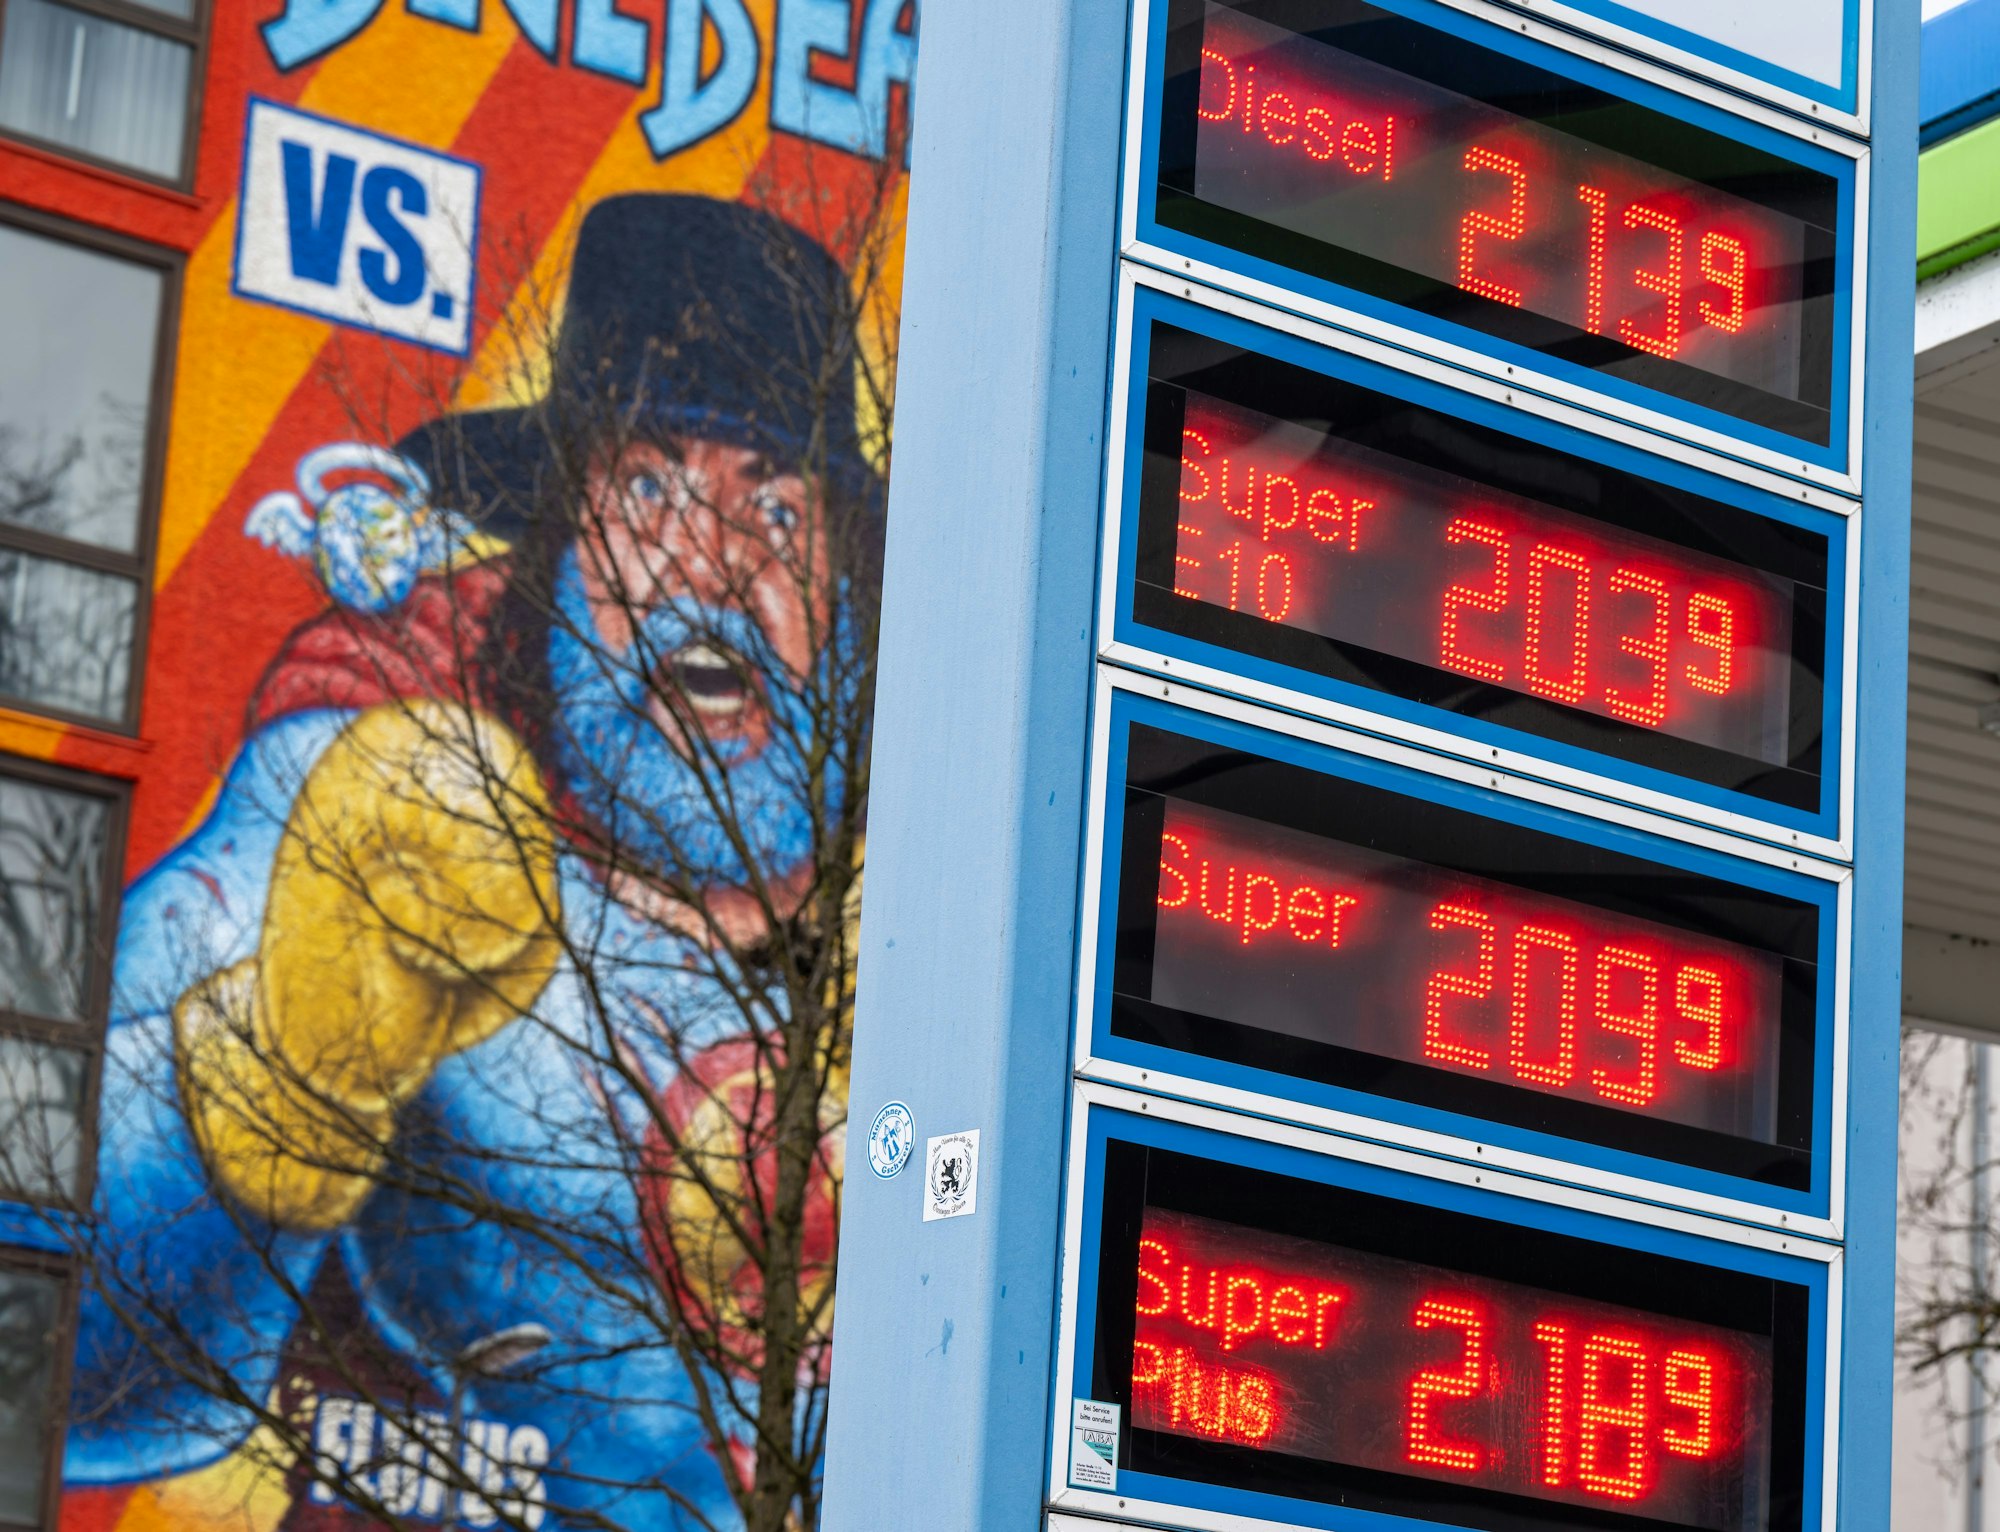 Die Kraftstoffpreise für Diesel, Super E10, Super und Super Plus stehen in den Morgenstunden auf der Anzeigentafel einer Tankstelle. Spritpreise gehen nach oben: Unser Foto ist ein undatiertes Symbolbild von einer Tankstelle.